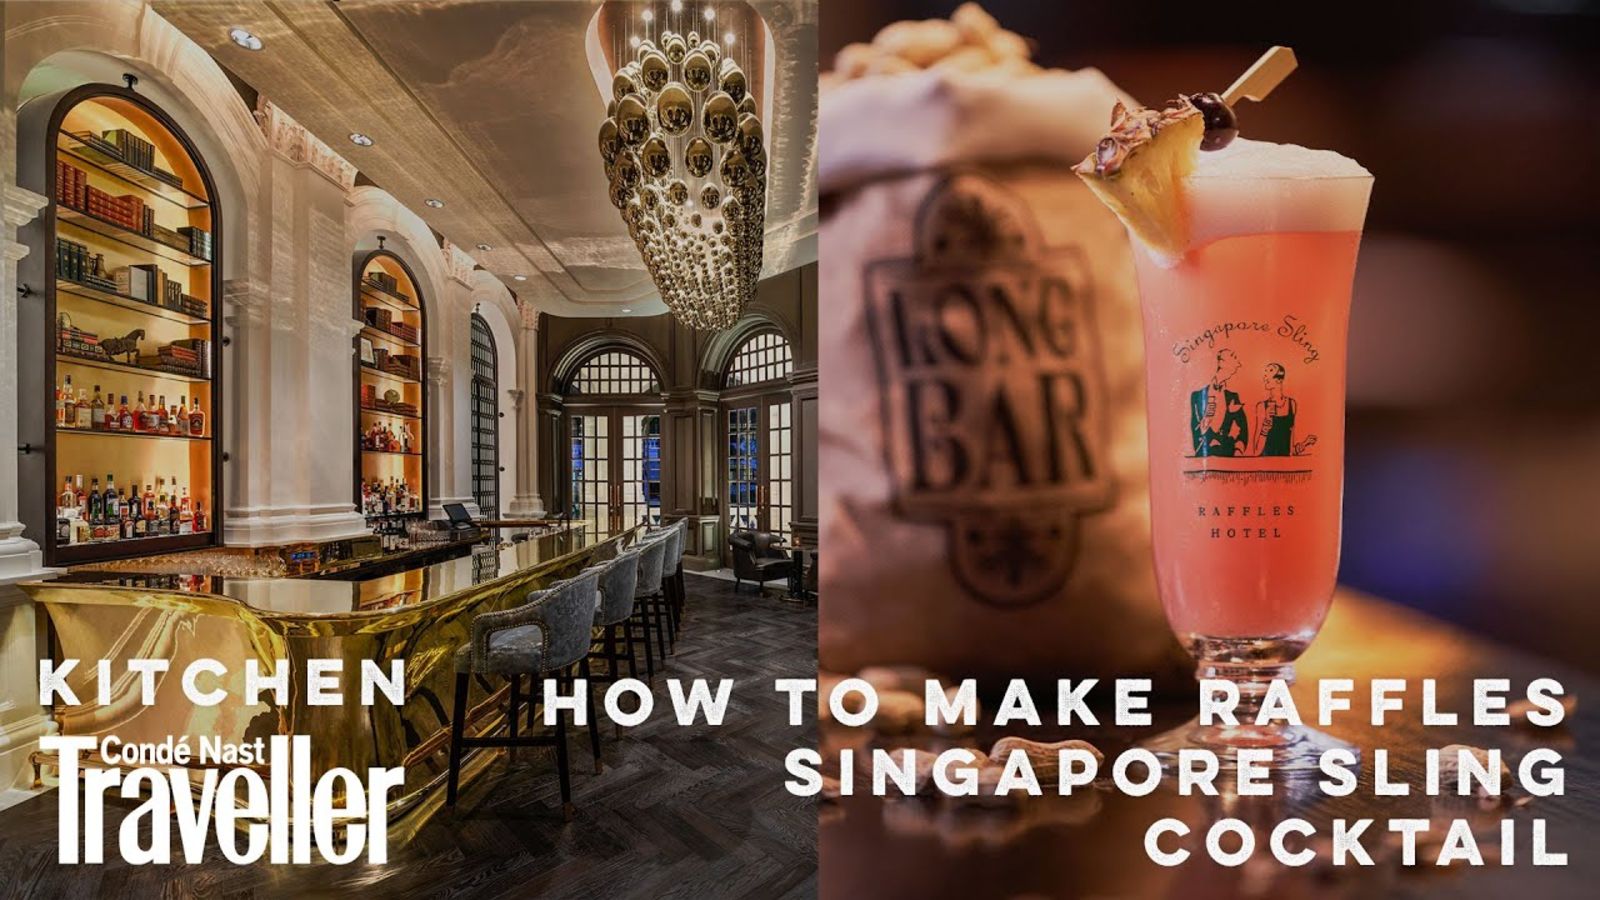 How to make a Singapore Sling: the original Raffles recipe